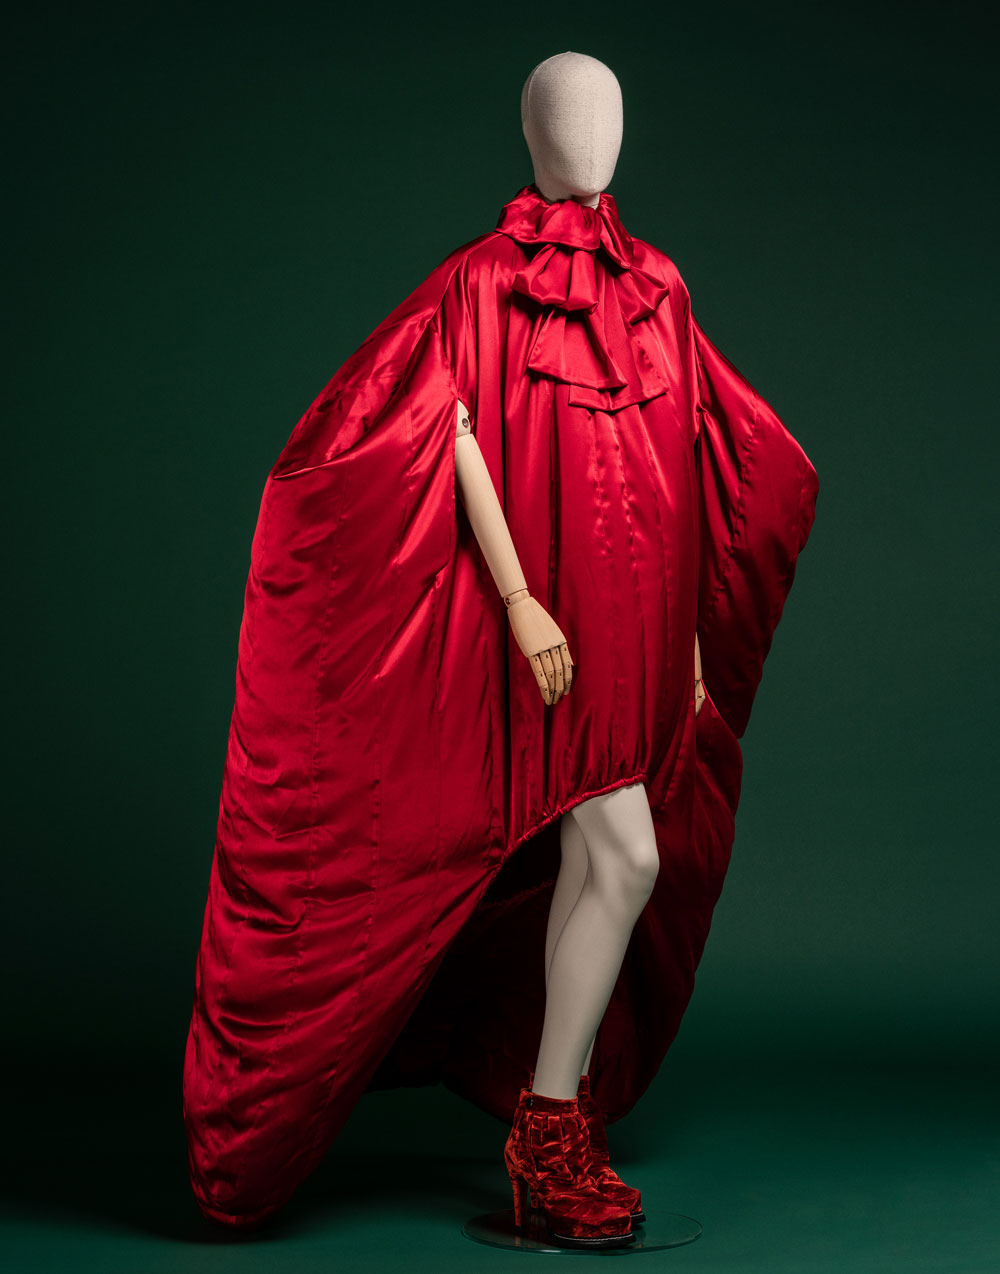 Exposición de Moda en Madrid: Alvarado en Museo del Traje